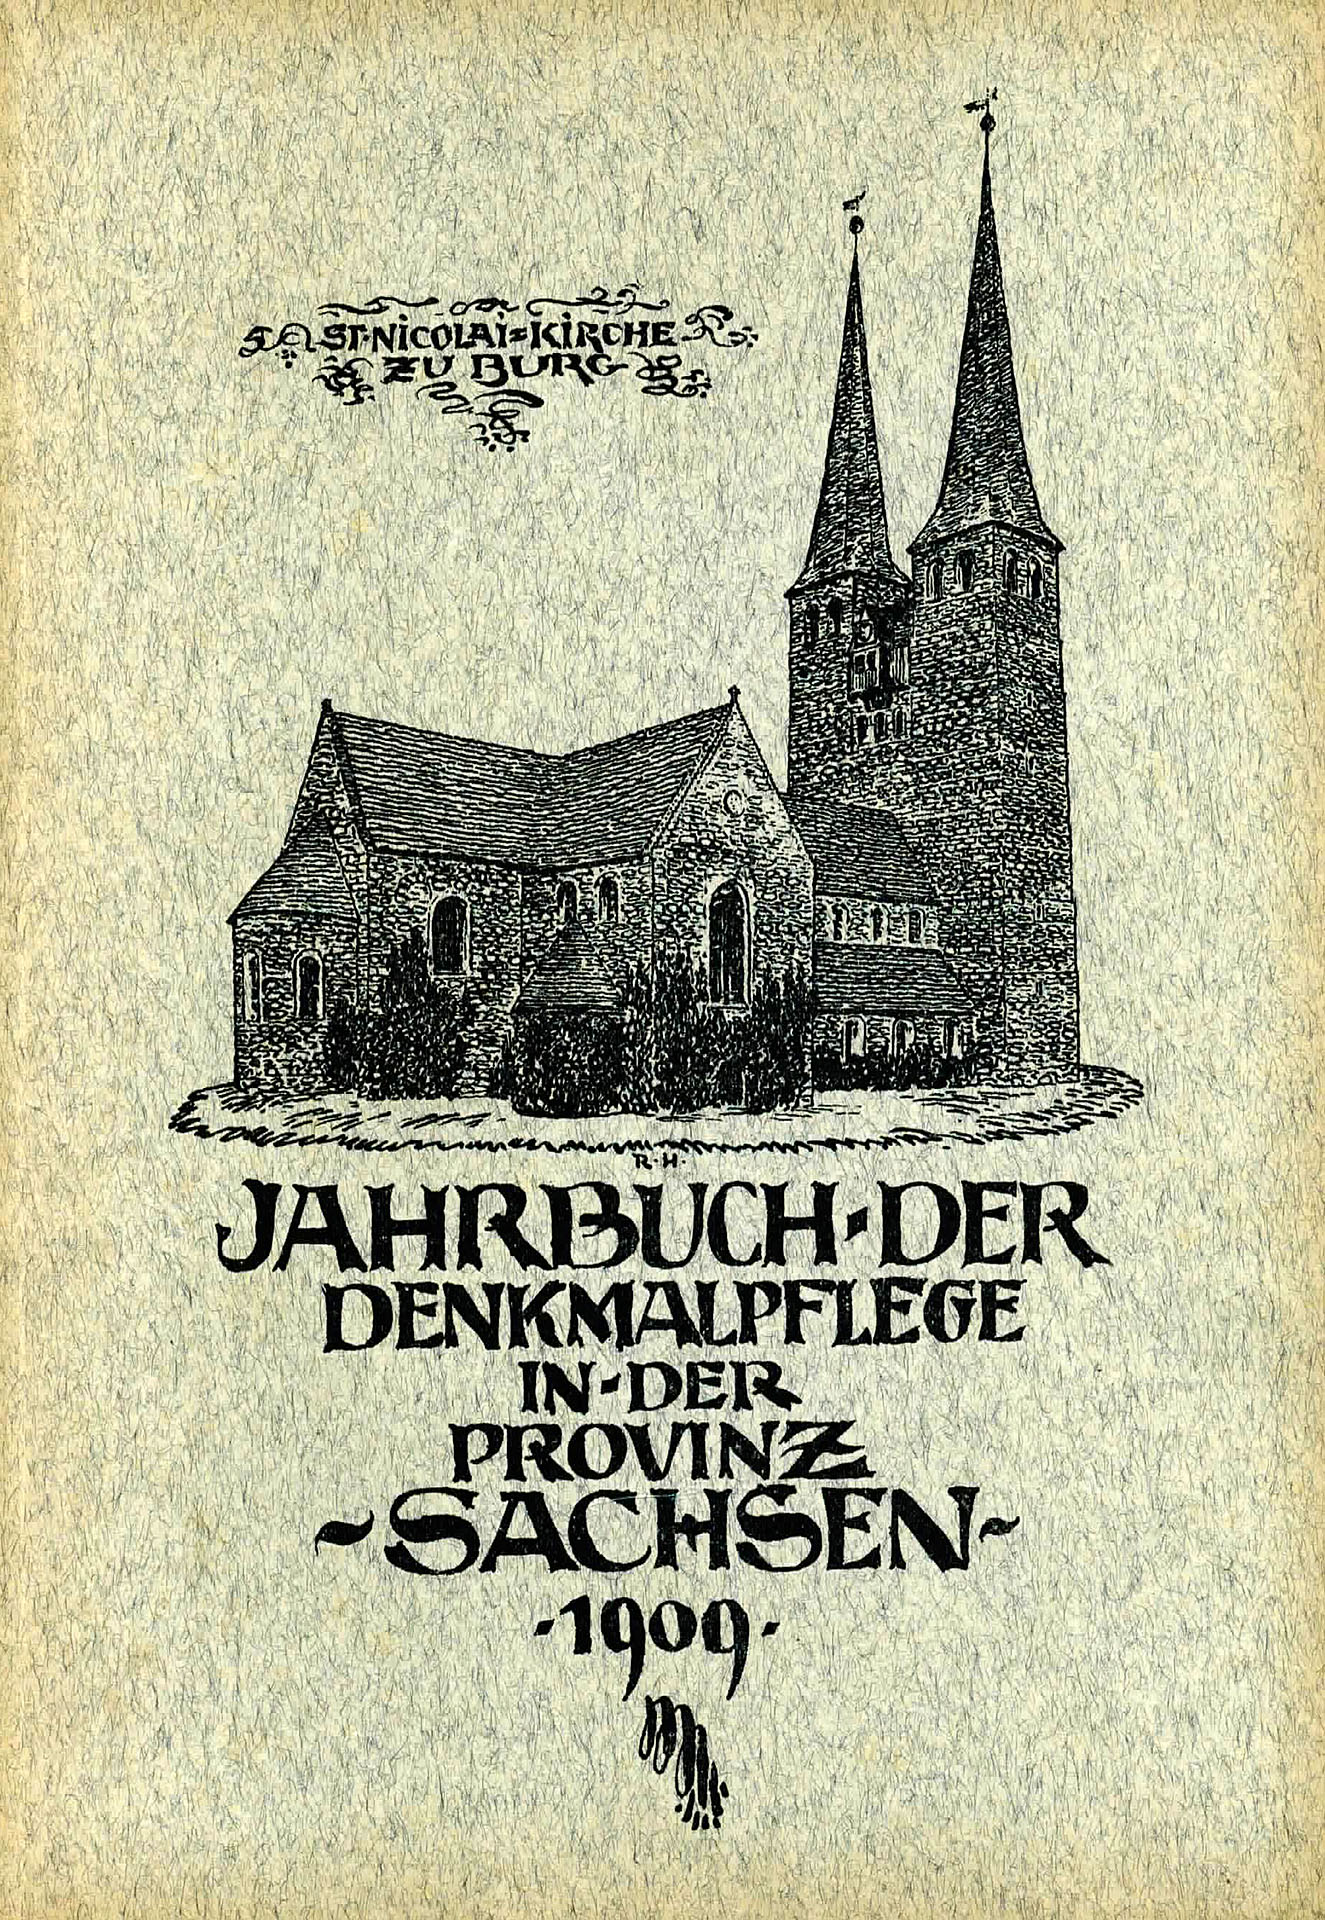 Jahrbuch der Denkmalpflege in der Provinz Sachsen 1909 - Verein zur Erhaltung der Denkmäler der Provinz Sachsen